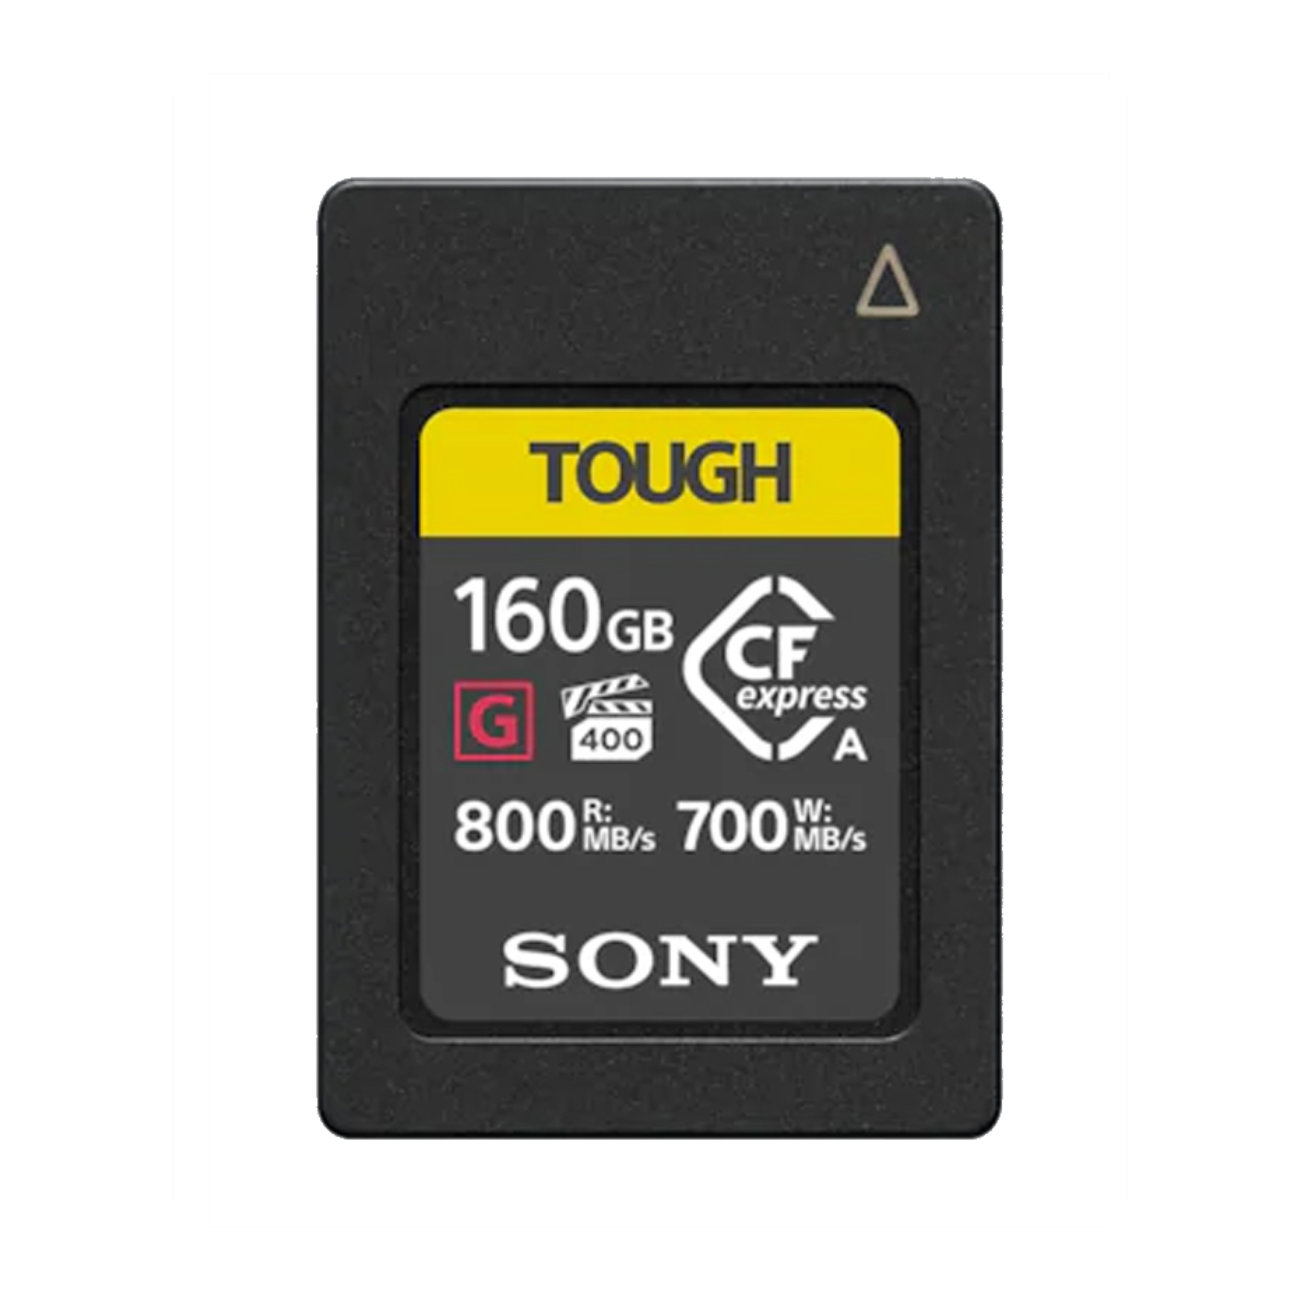 Sony 160GB CFexpress Typ A Tough